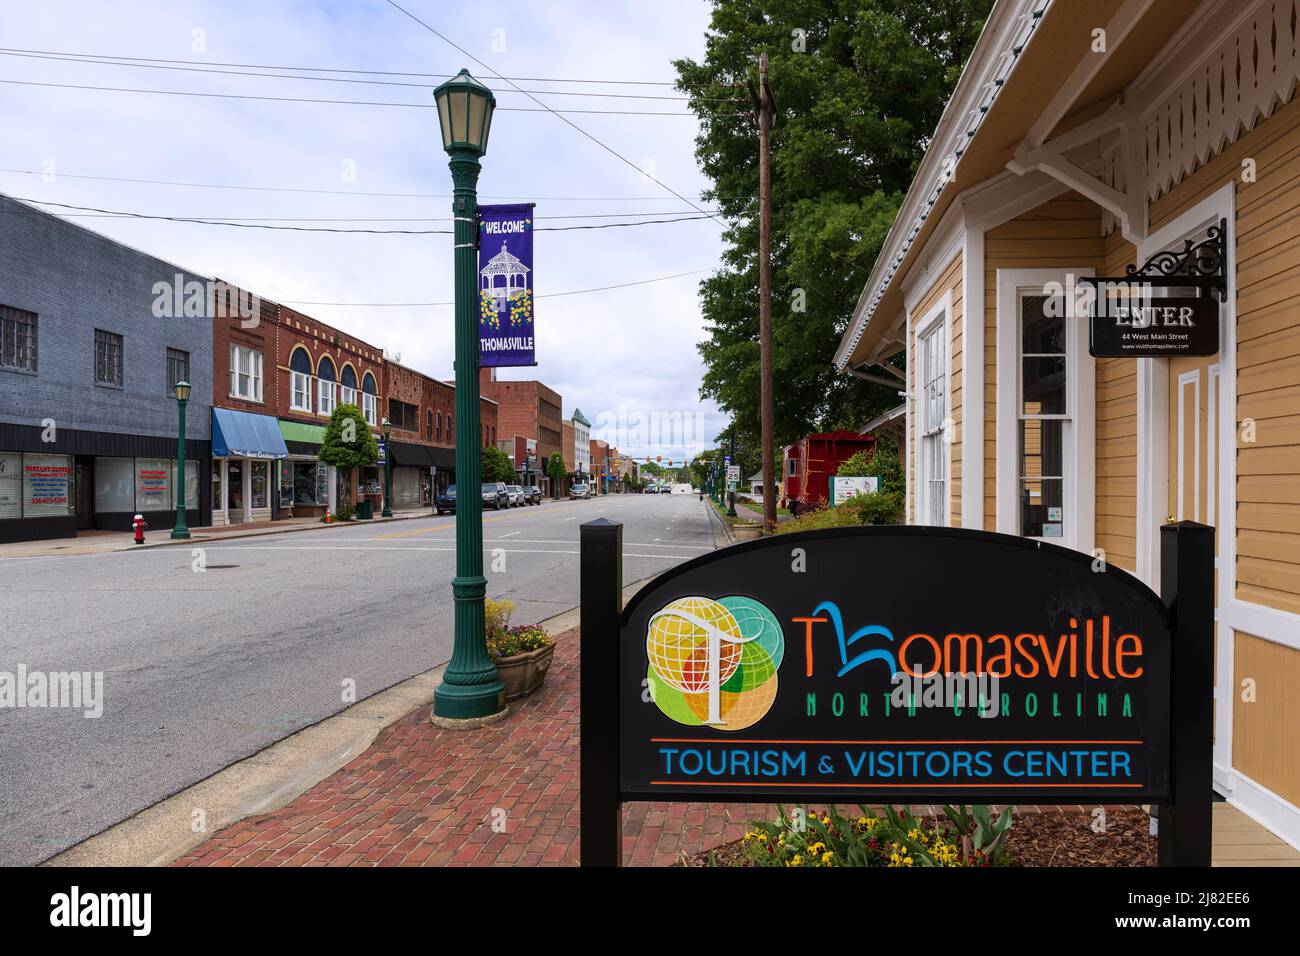 THOMASVILLE, NC, USA-8 MAYO 2022: Thomasville Tourism & Visitors Center, múltiples señales, caboose rojo, vista de la calle principal. Foto de stock